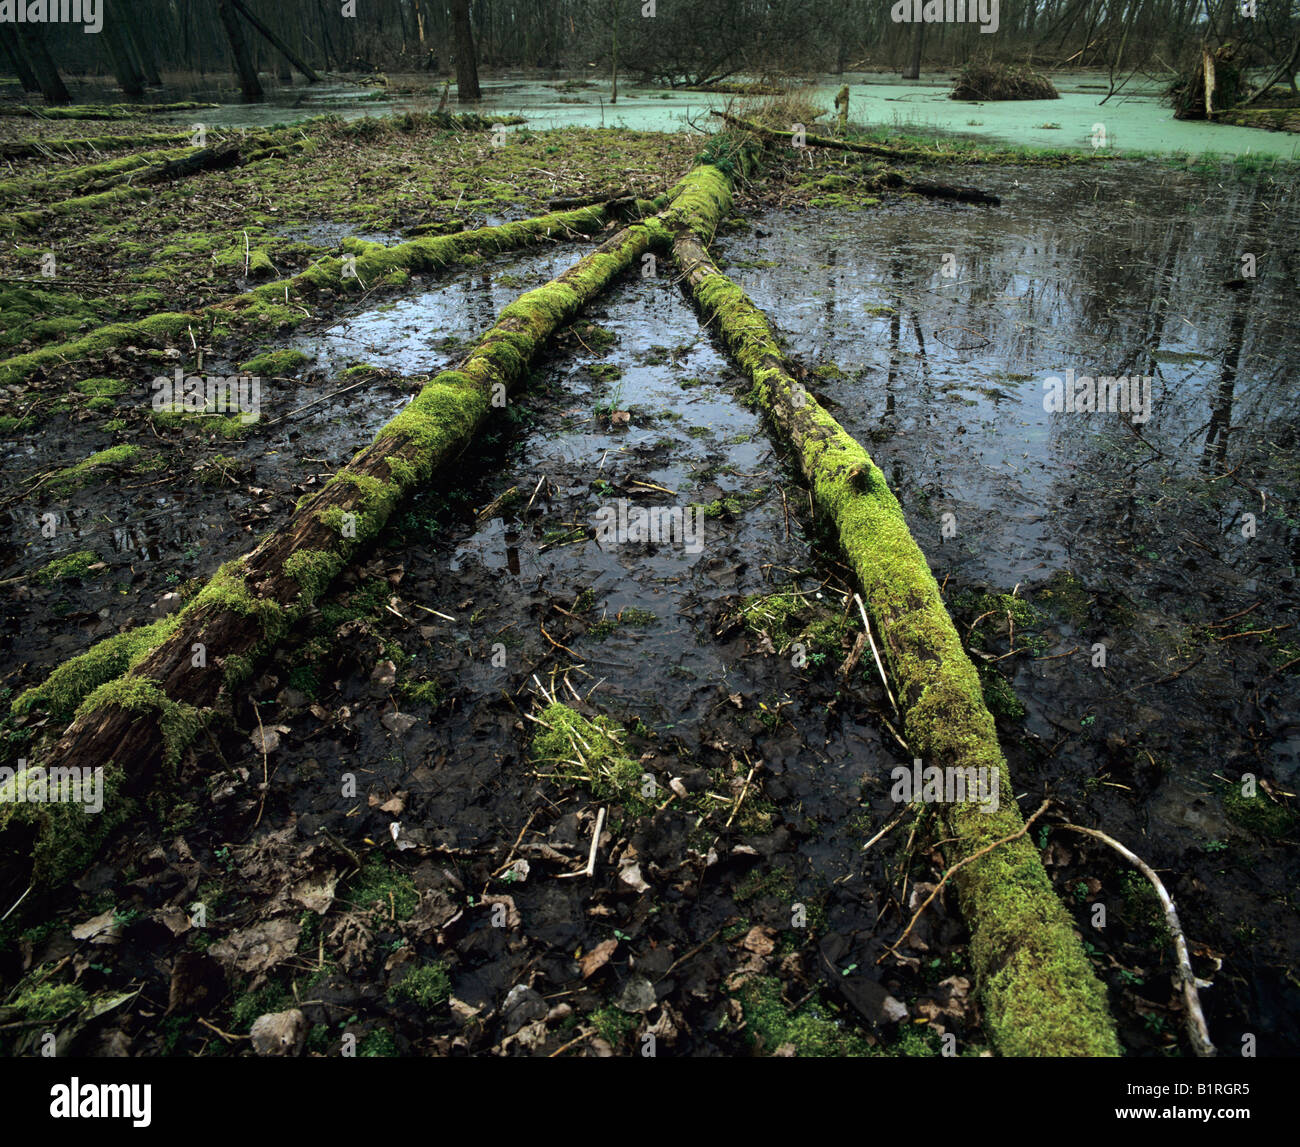 Lebensraum Feuchtgebiet mit Moos bewachsenen Totholz, Dicke Wasserlinsen Teppich hinten Stockfoto